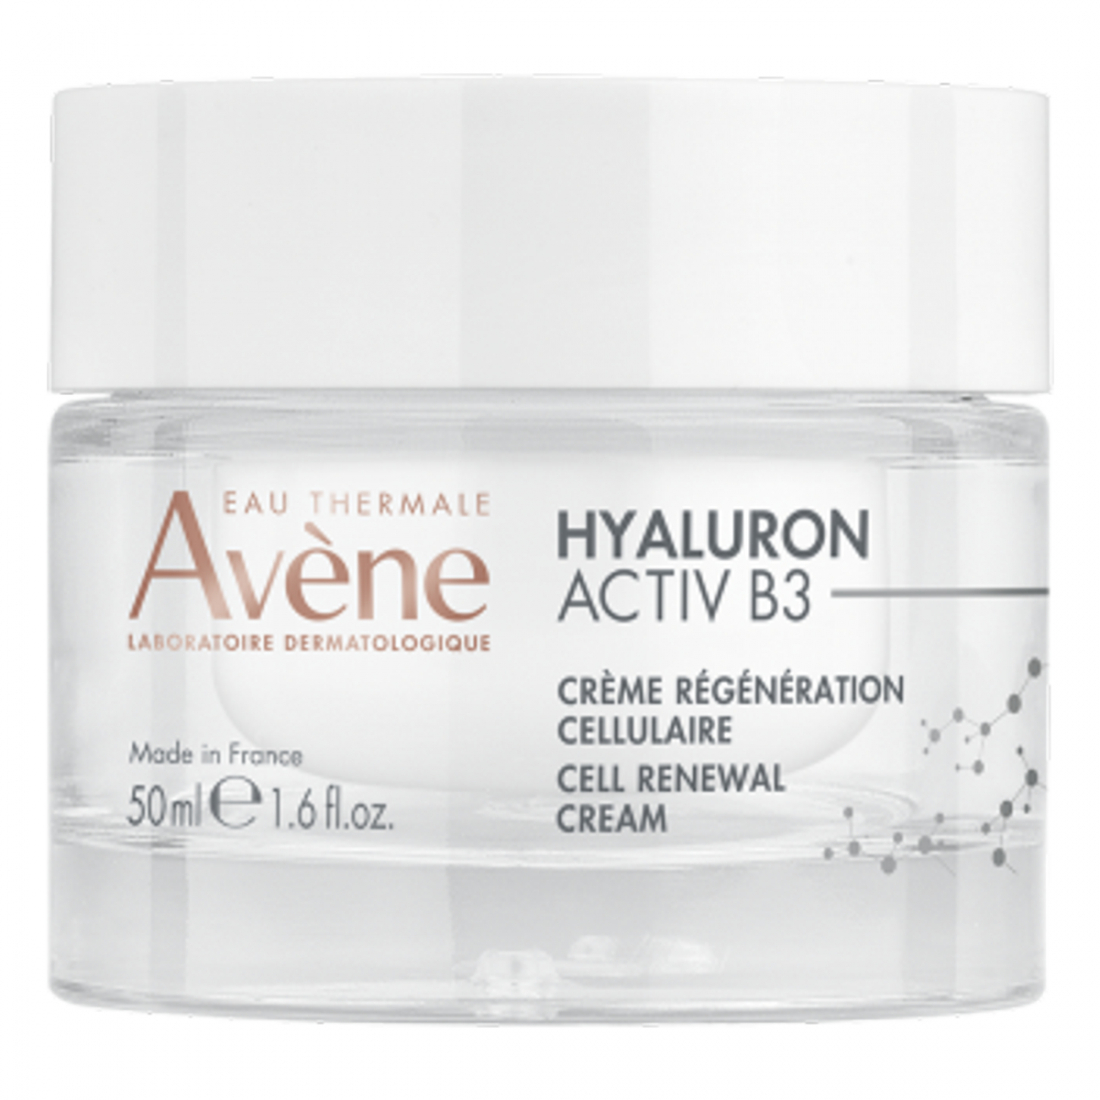 Hyaluron Activ B3 Crème régénération cellulaire - 50 ml